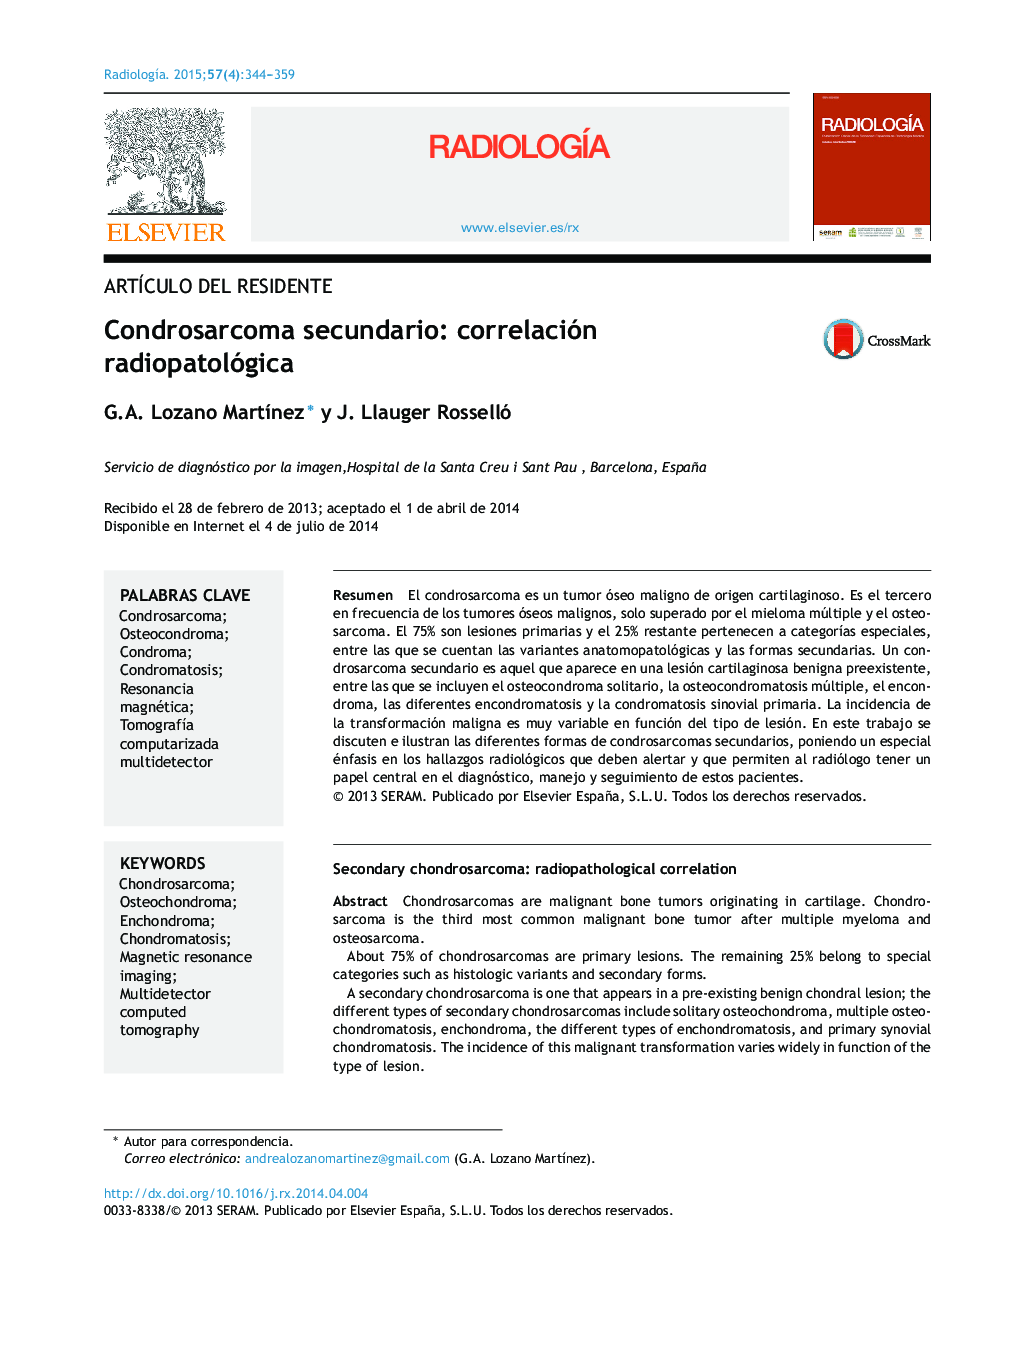 Condrosarcoma secundario: correlación radiopatológica